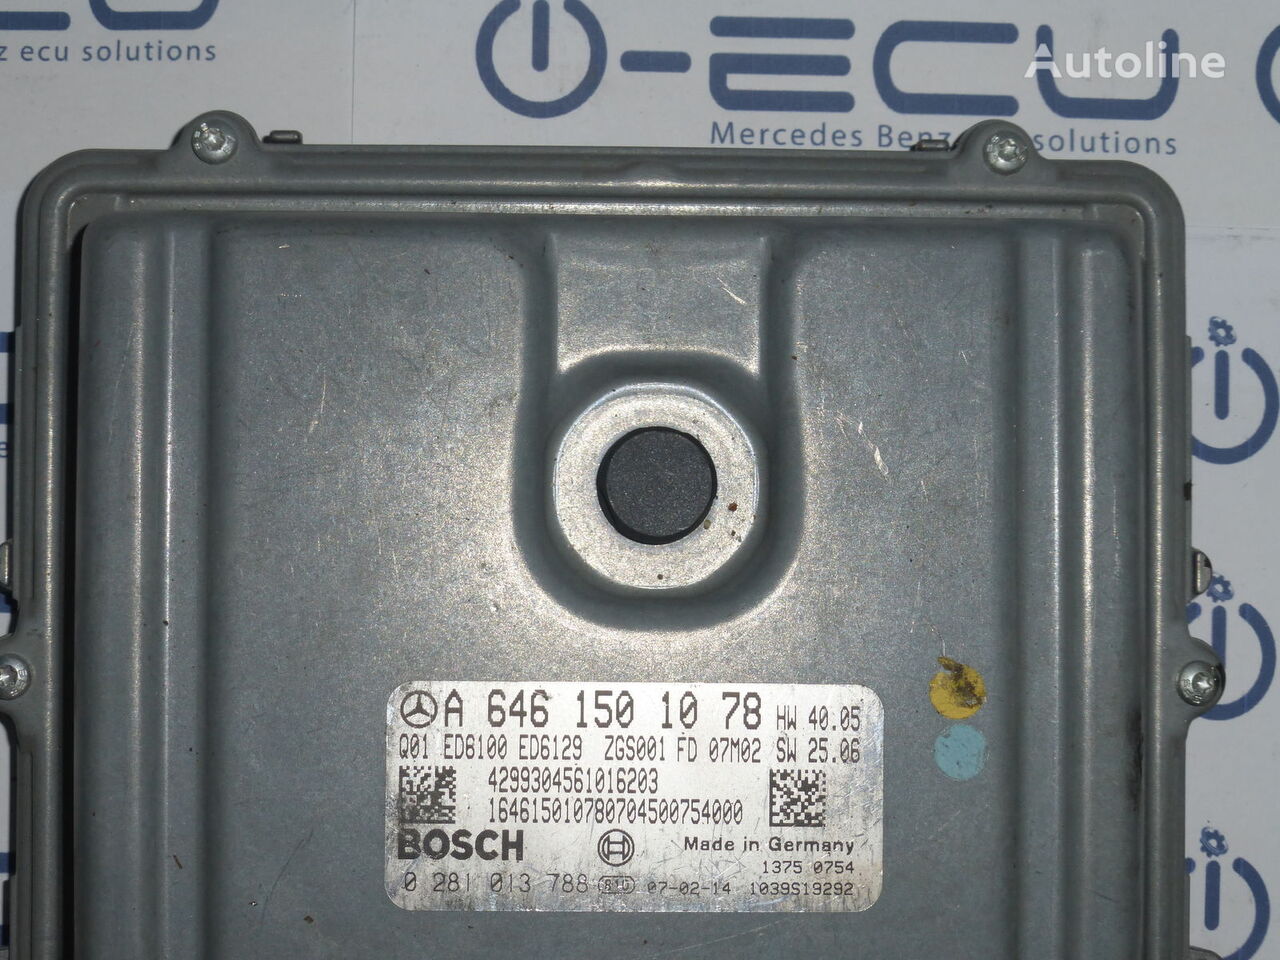 Bosch control unit for Mercedes-Benz VITO 639 automobile